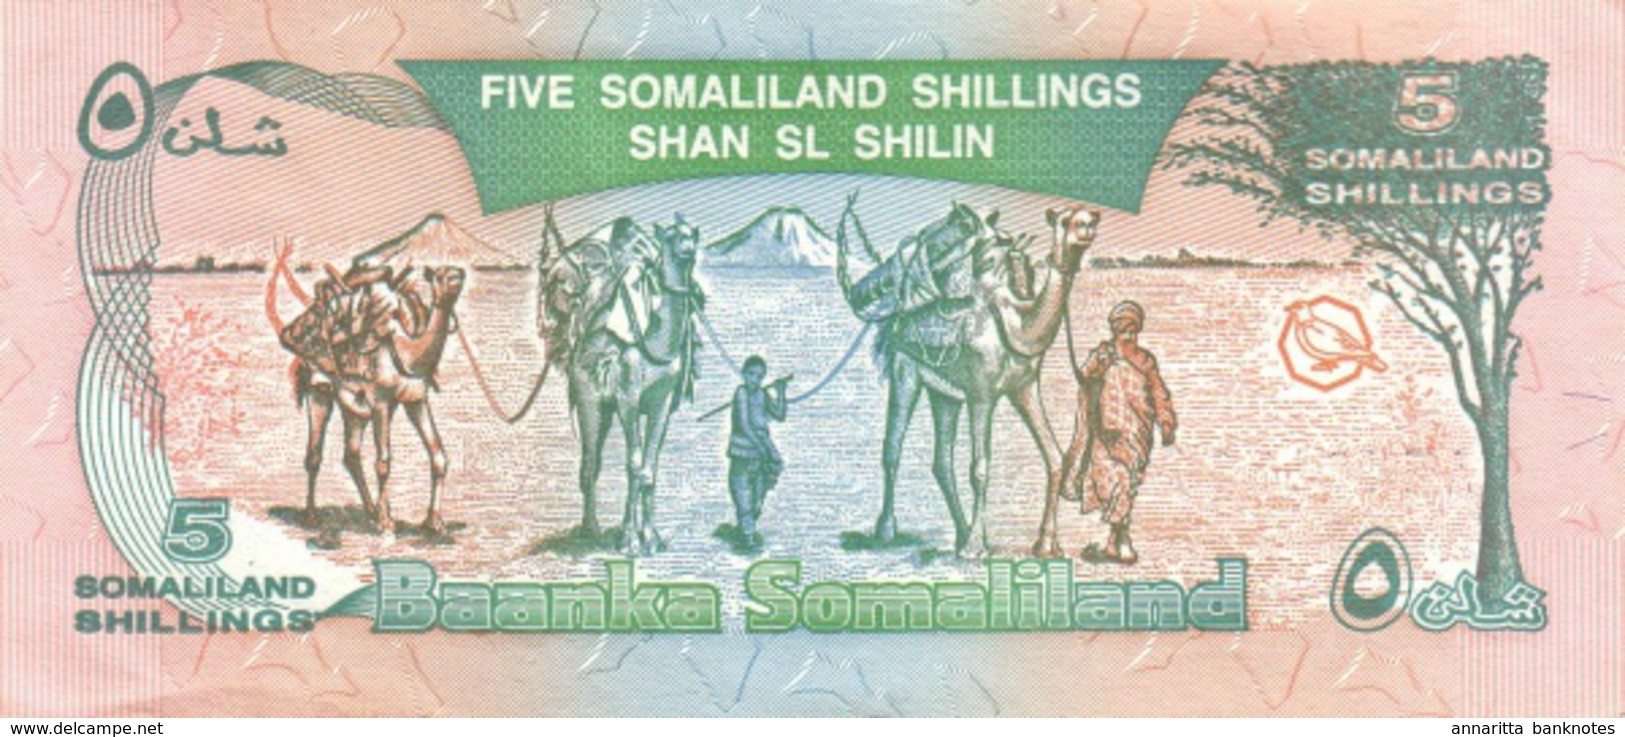 Somaliland (BOS) 5 Shillings 1994 UNC Cat No. P-1 / SOL101a - Somalia